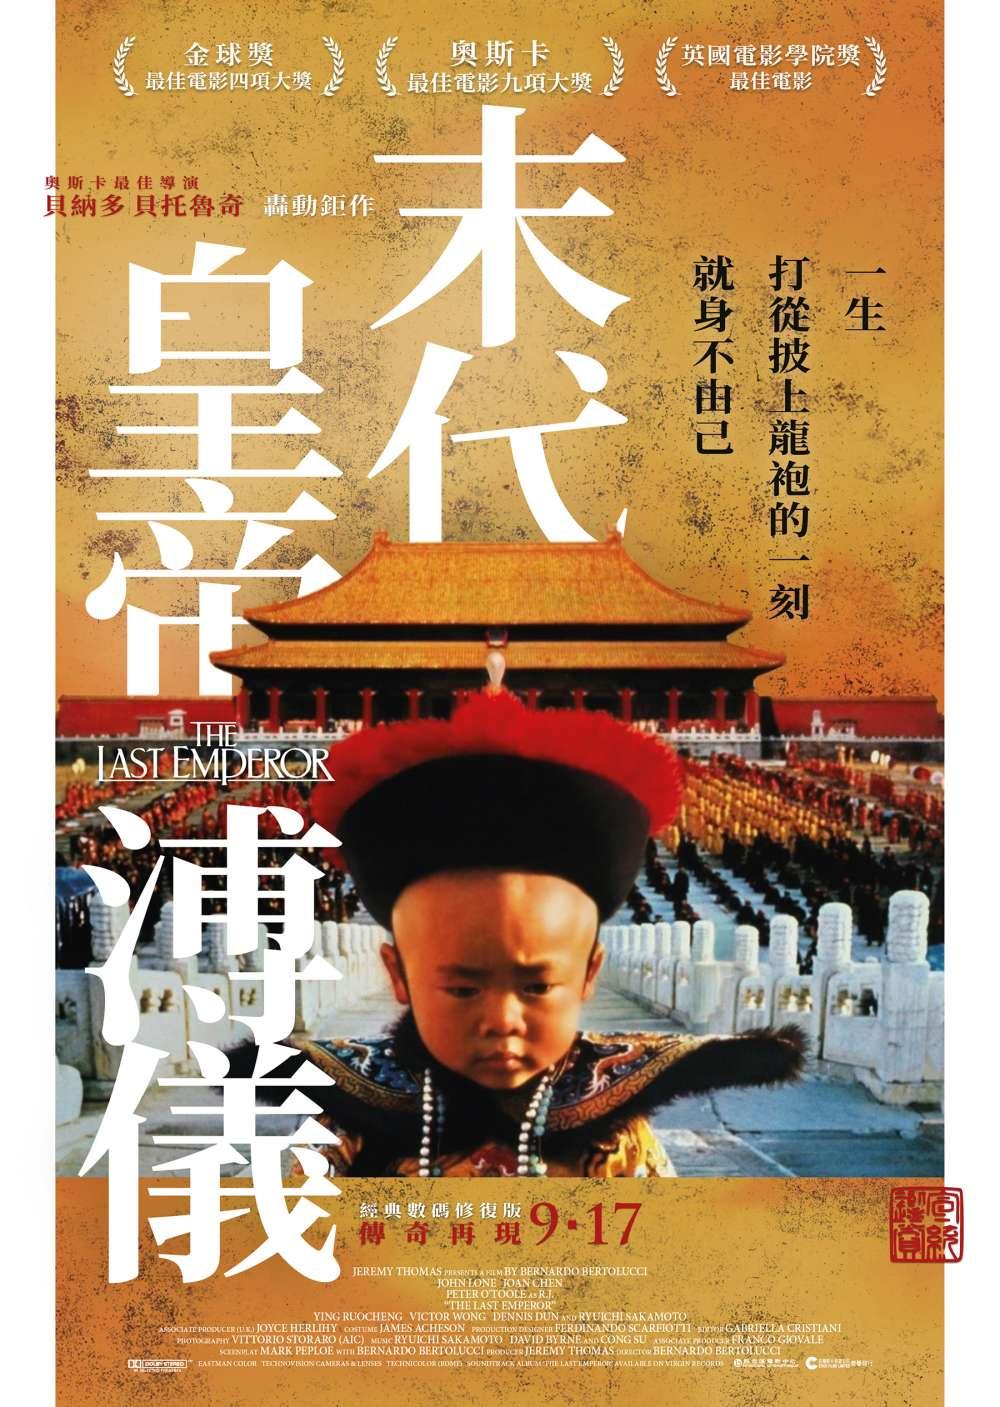 Hong Kong Poster #2 (2020 Version)